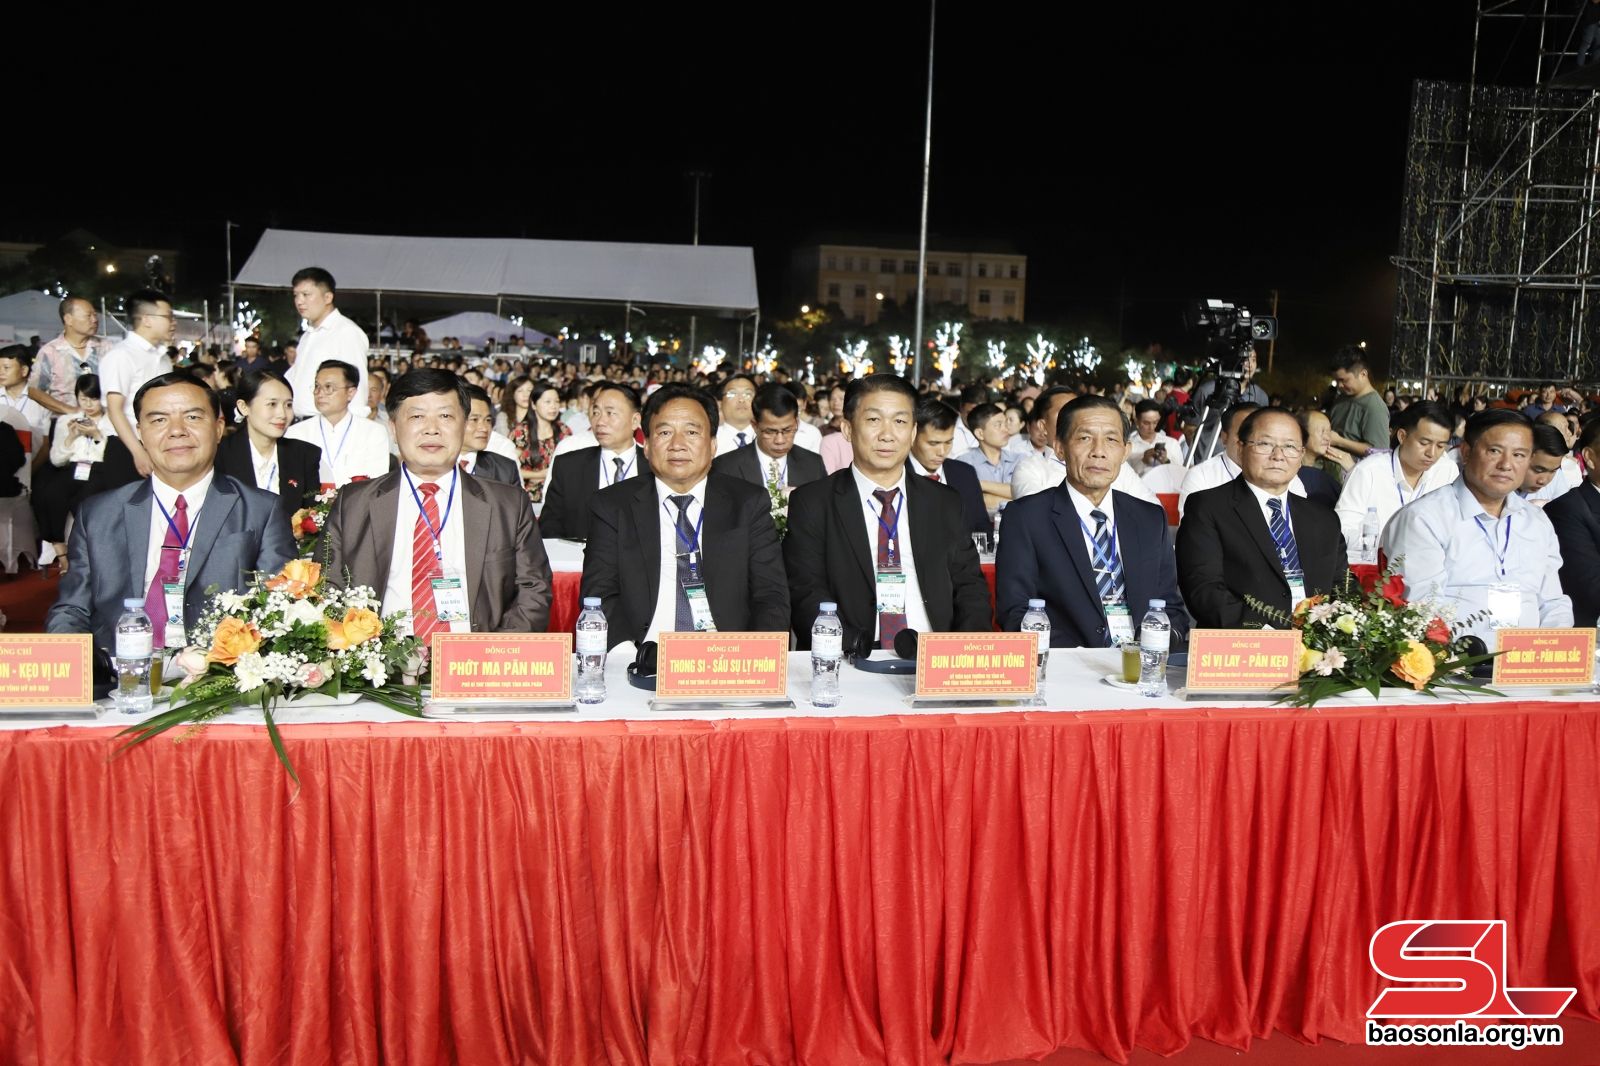 Đại biểu các tỉnh Bắc Lào dự lễ công bố.

